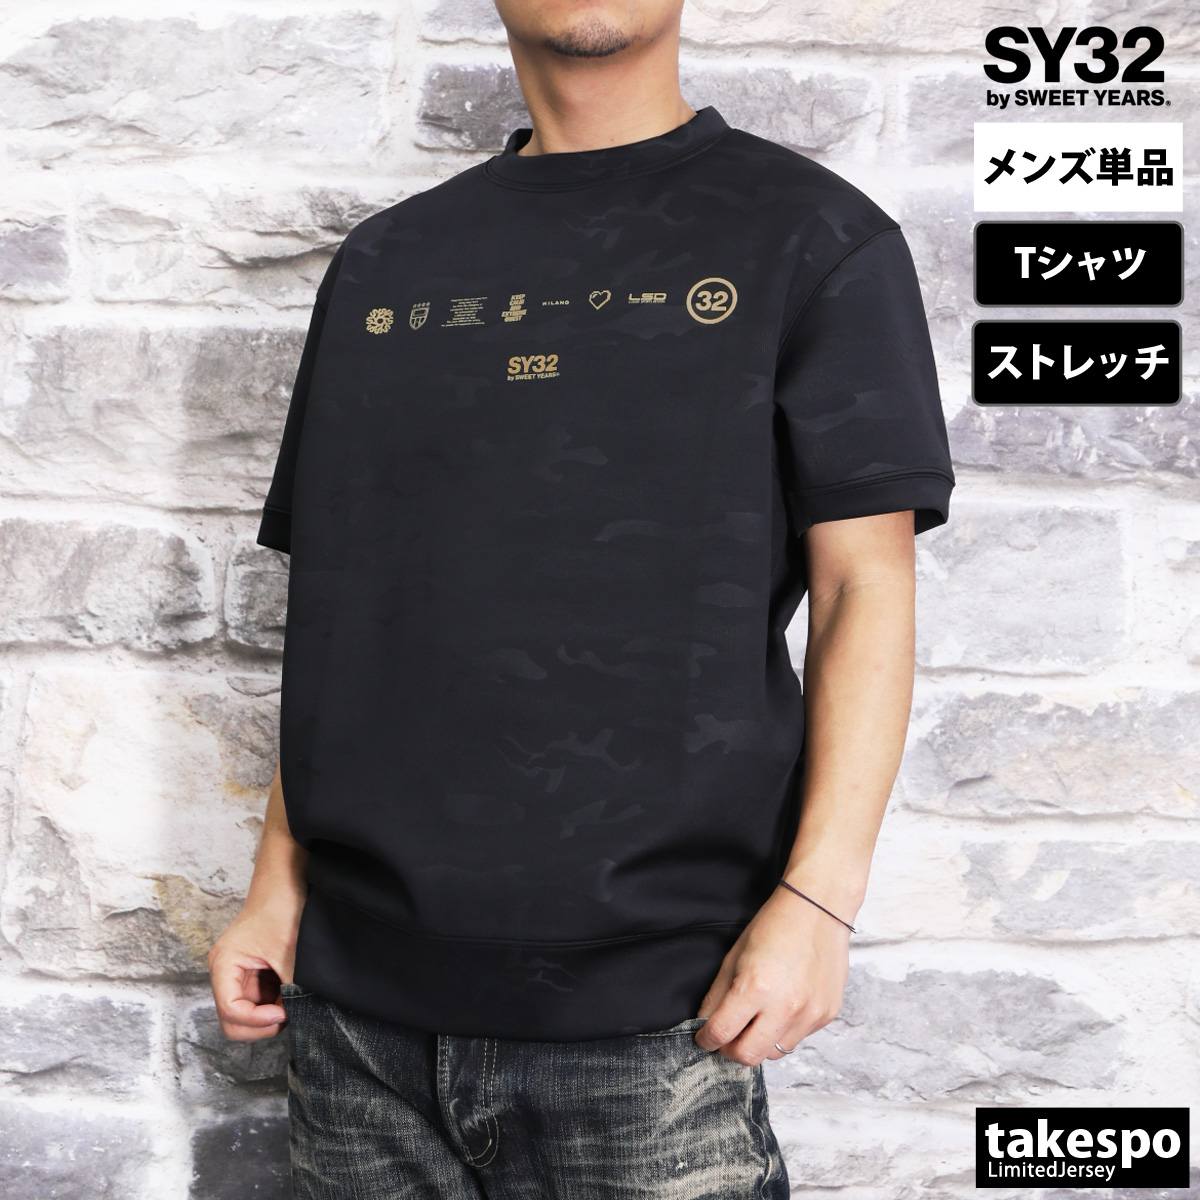 スウィートイヤーズ Tシャツ メンズ 上 SY32 by SWEET YEARS 半袖 ストレッチ ...